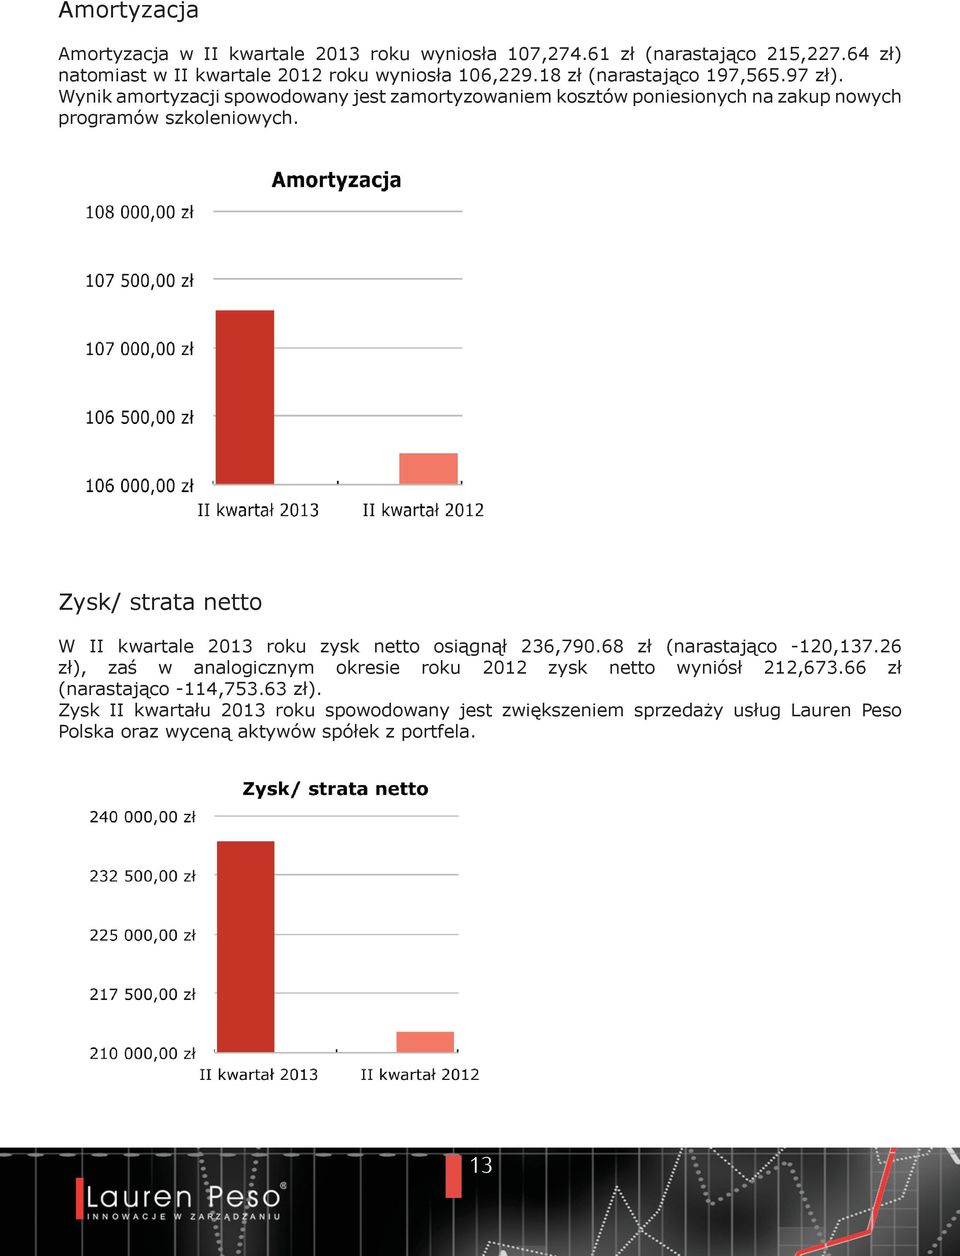 Zysk/ strata netto W II kwartale 2013 roku zysk netto osiągnął 236,790.68 zł (narastająco -120,137.